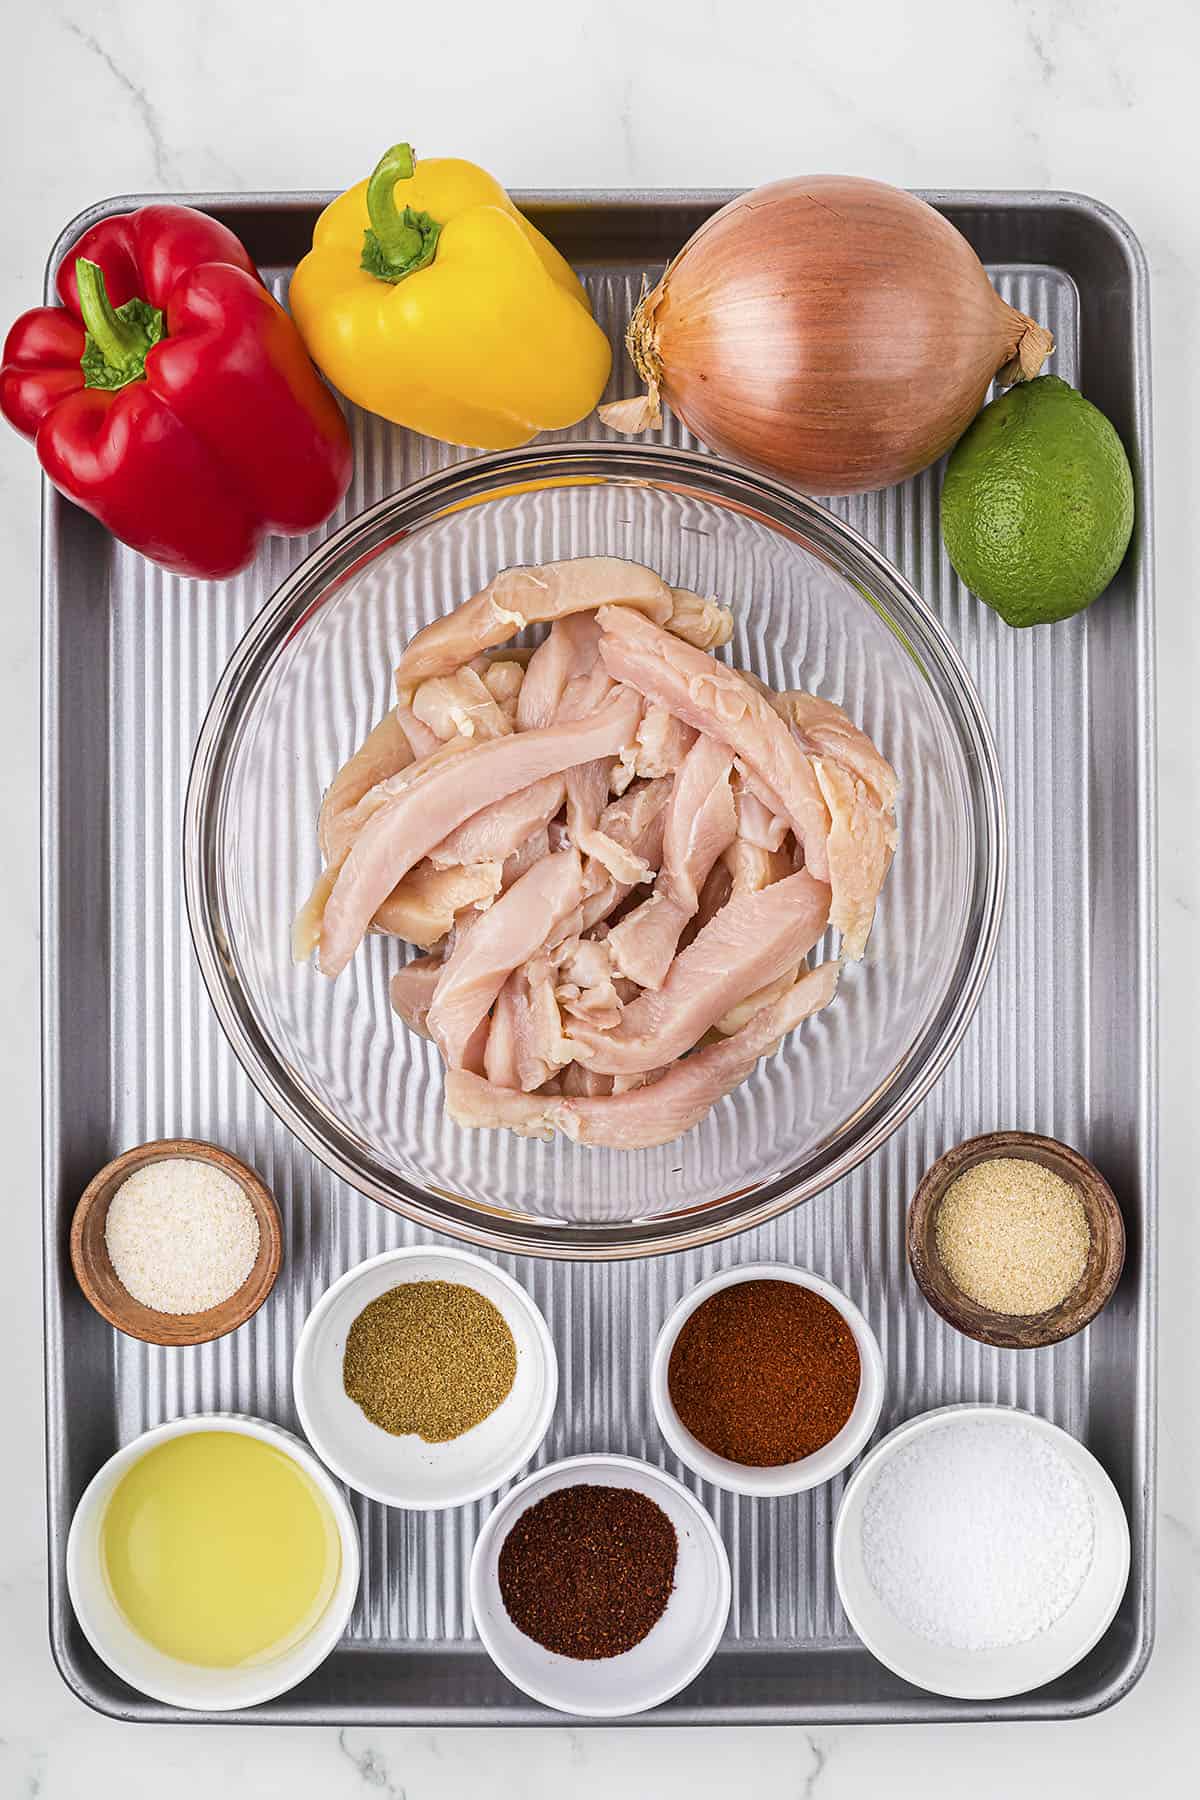 Ingredients for making sheet pan chicken fajitas.